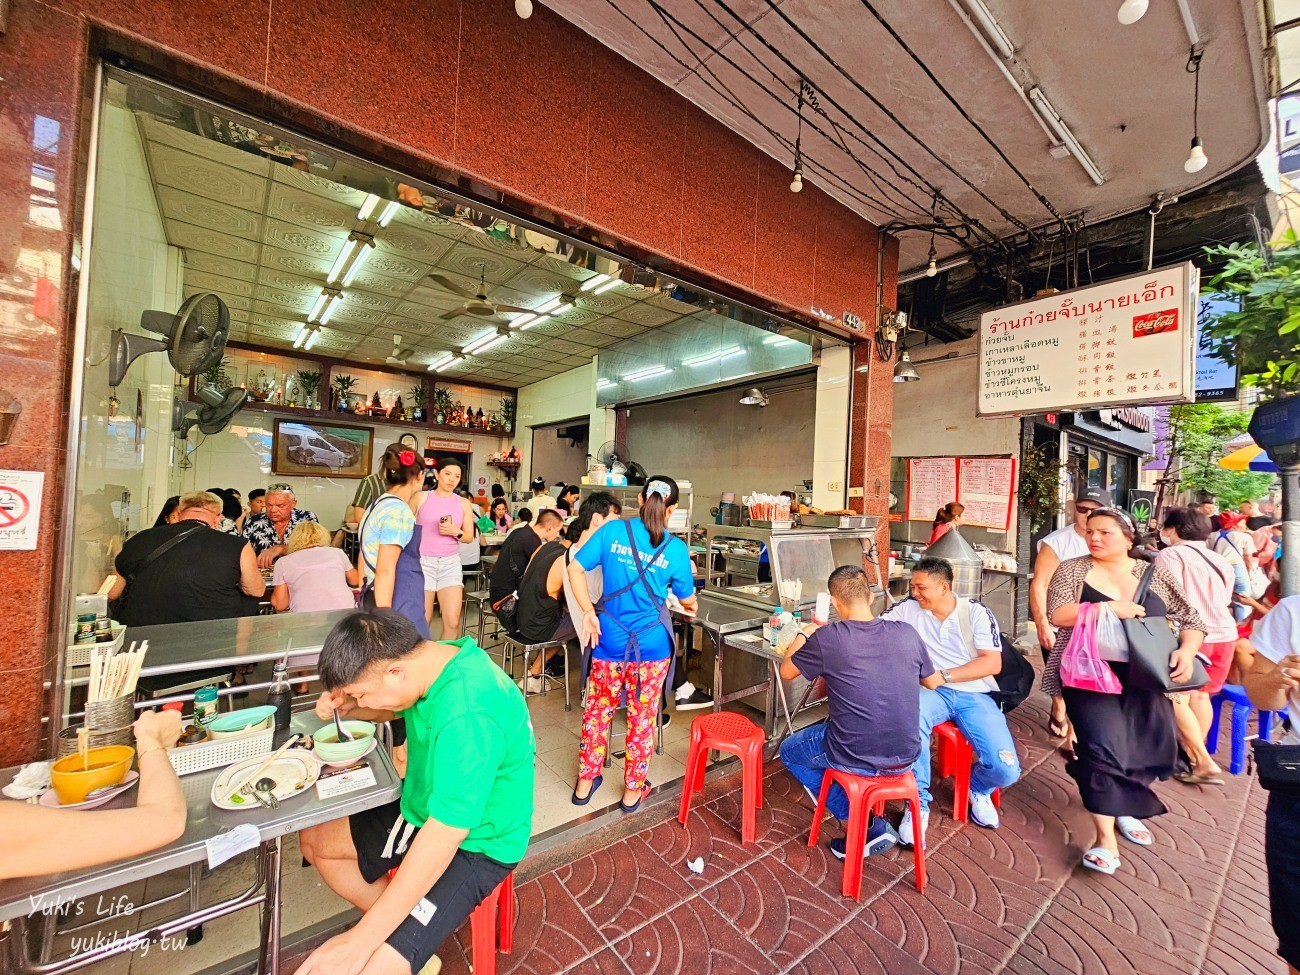 曼谷捷運地鐵景點攻略│曼谷MRT/BTS沿線必玩必吃景點,咖啡廳,美食,飯店住宿 - yukiblog.tw